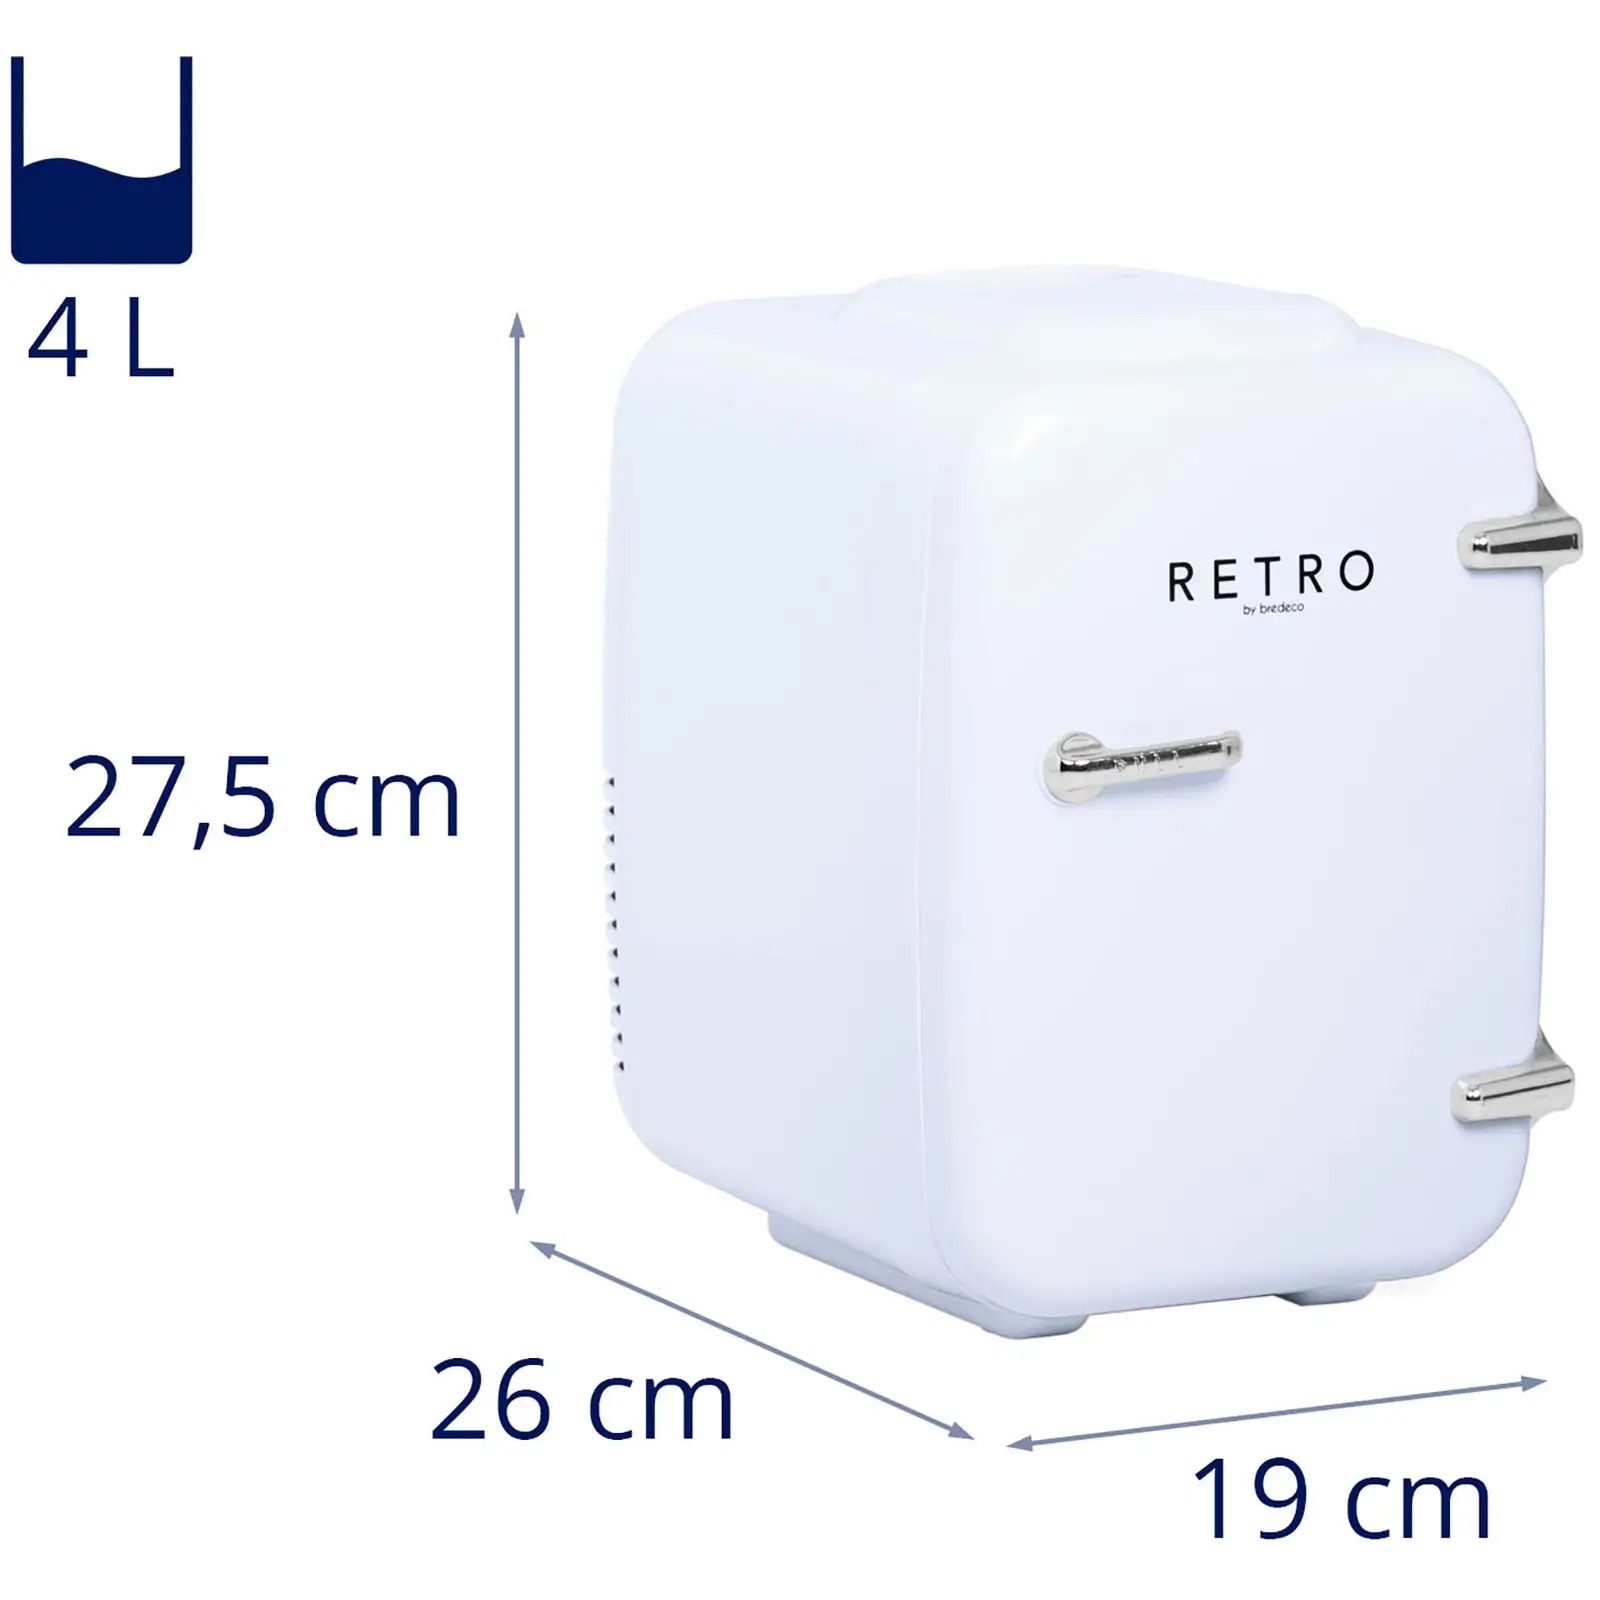 Mini frigorífico - para carros - 4 l - branco - termóstato